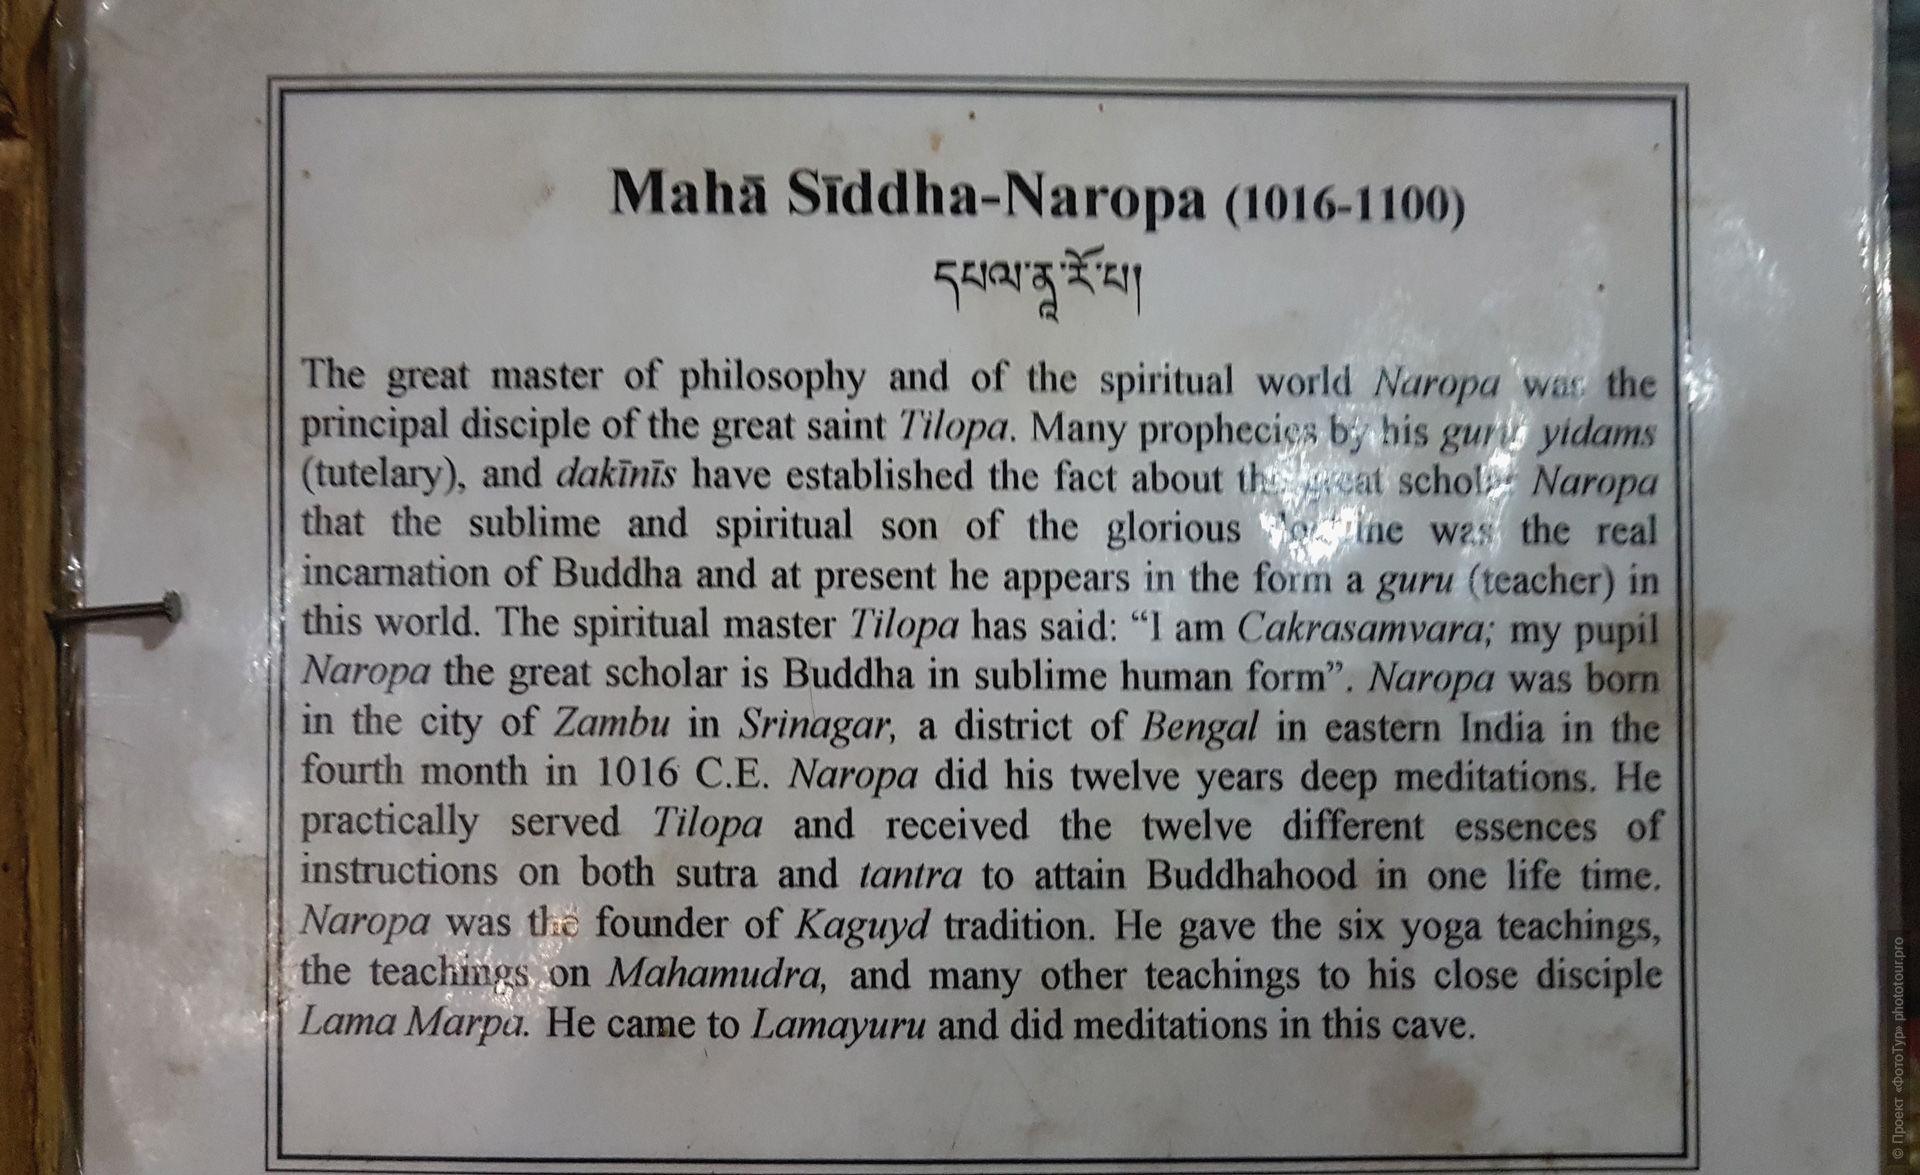 Табличка с описанием жизни Наропы в буддийском монастыре Ламаюру, Ладакх.